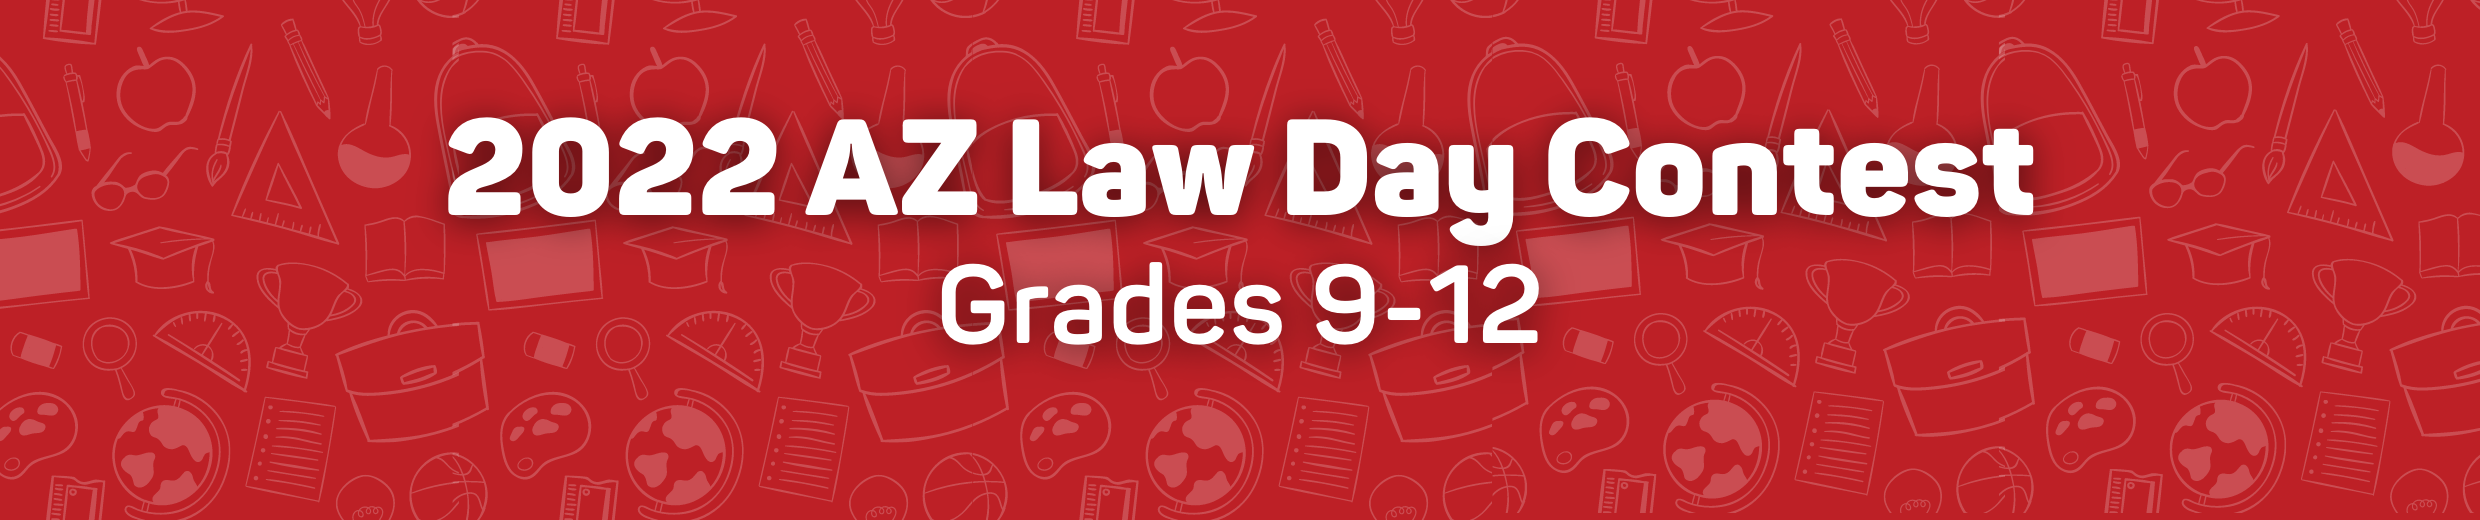 2022 Law Day Contest Grades 9-12